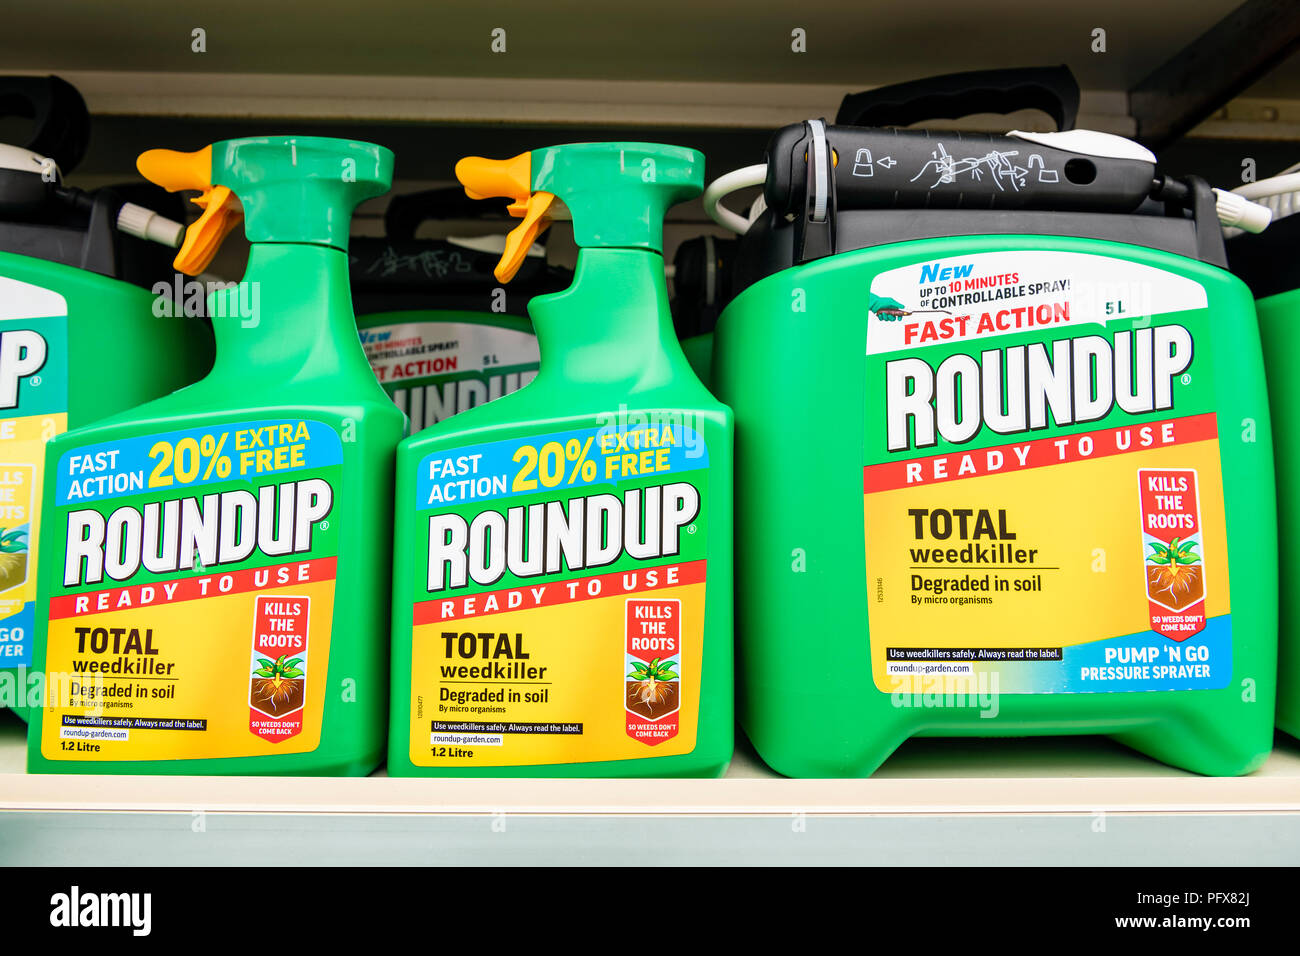 Désherbant Roundup fabriqué par Monsanto avec le glyphosate, UK. Banque D'Images